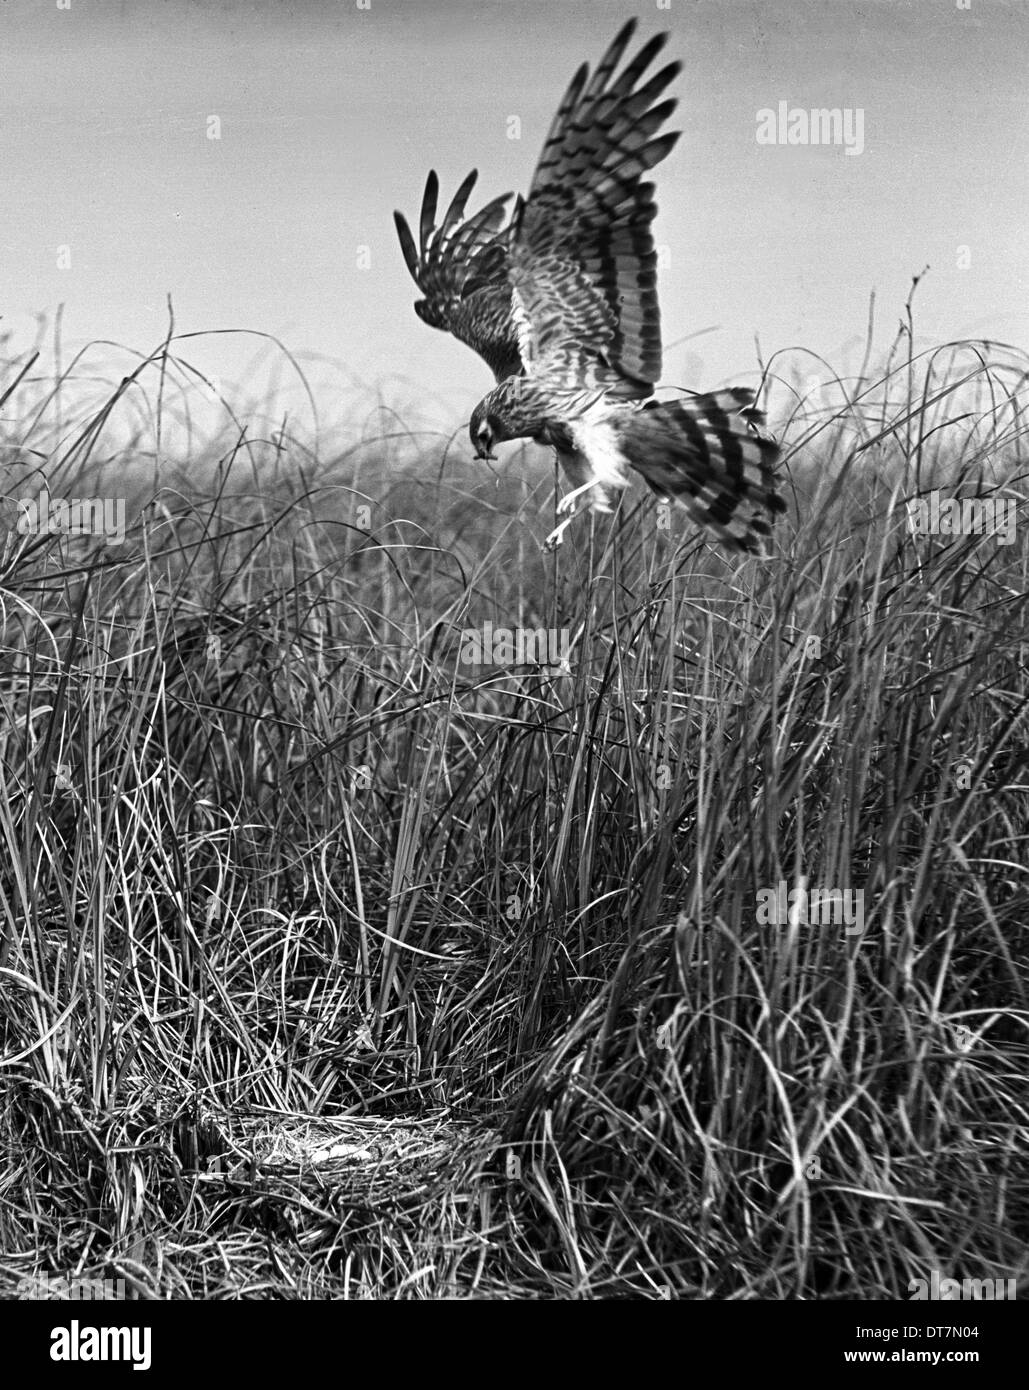 Montagu's Harrier Maggio 1938 Sanderson campo fotocamera,serrac 8.5 pollici lente F/11 1/50 velocità otturatore HSFP film. Questa immagine è stata utilizzata Foto Stock